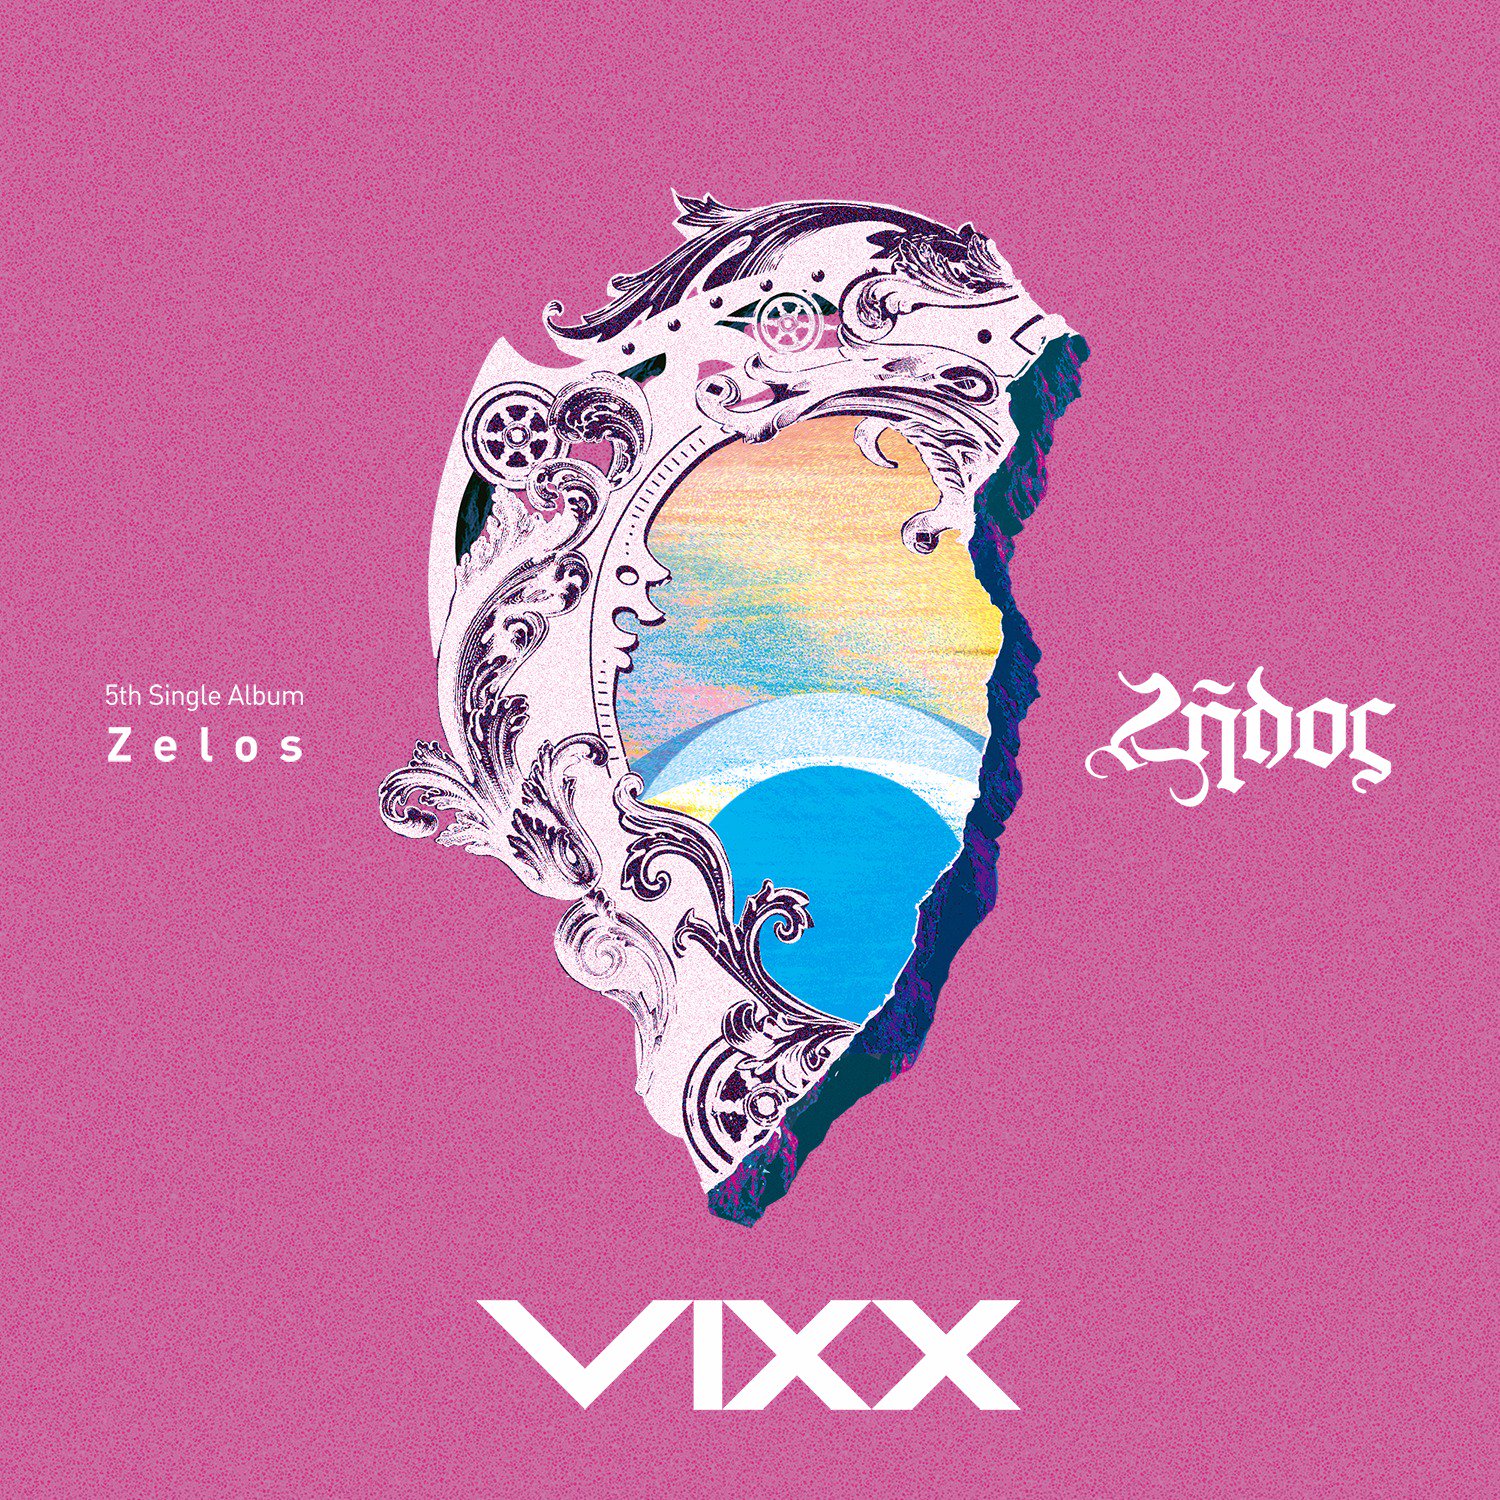 19일(화), VIXX 싱글 앨범 5집 'Zelos' 발매 예정 | 인스티즈